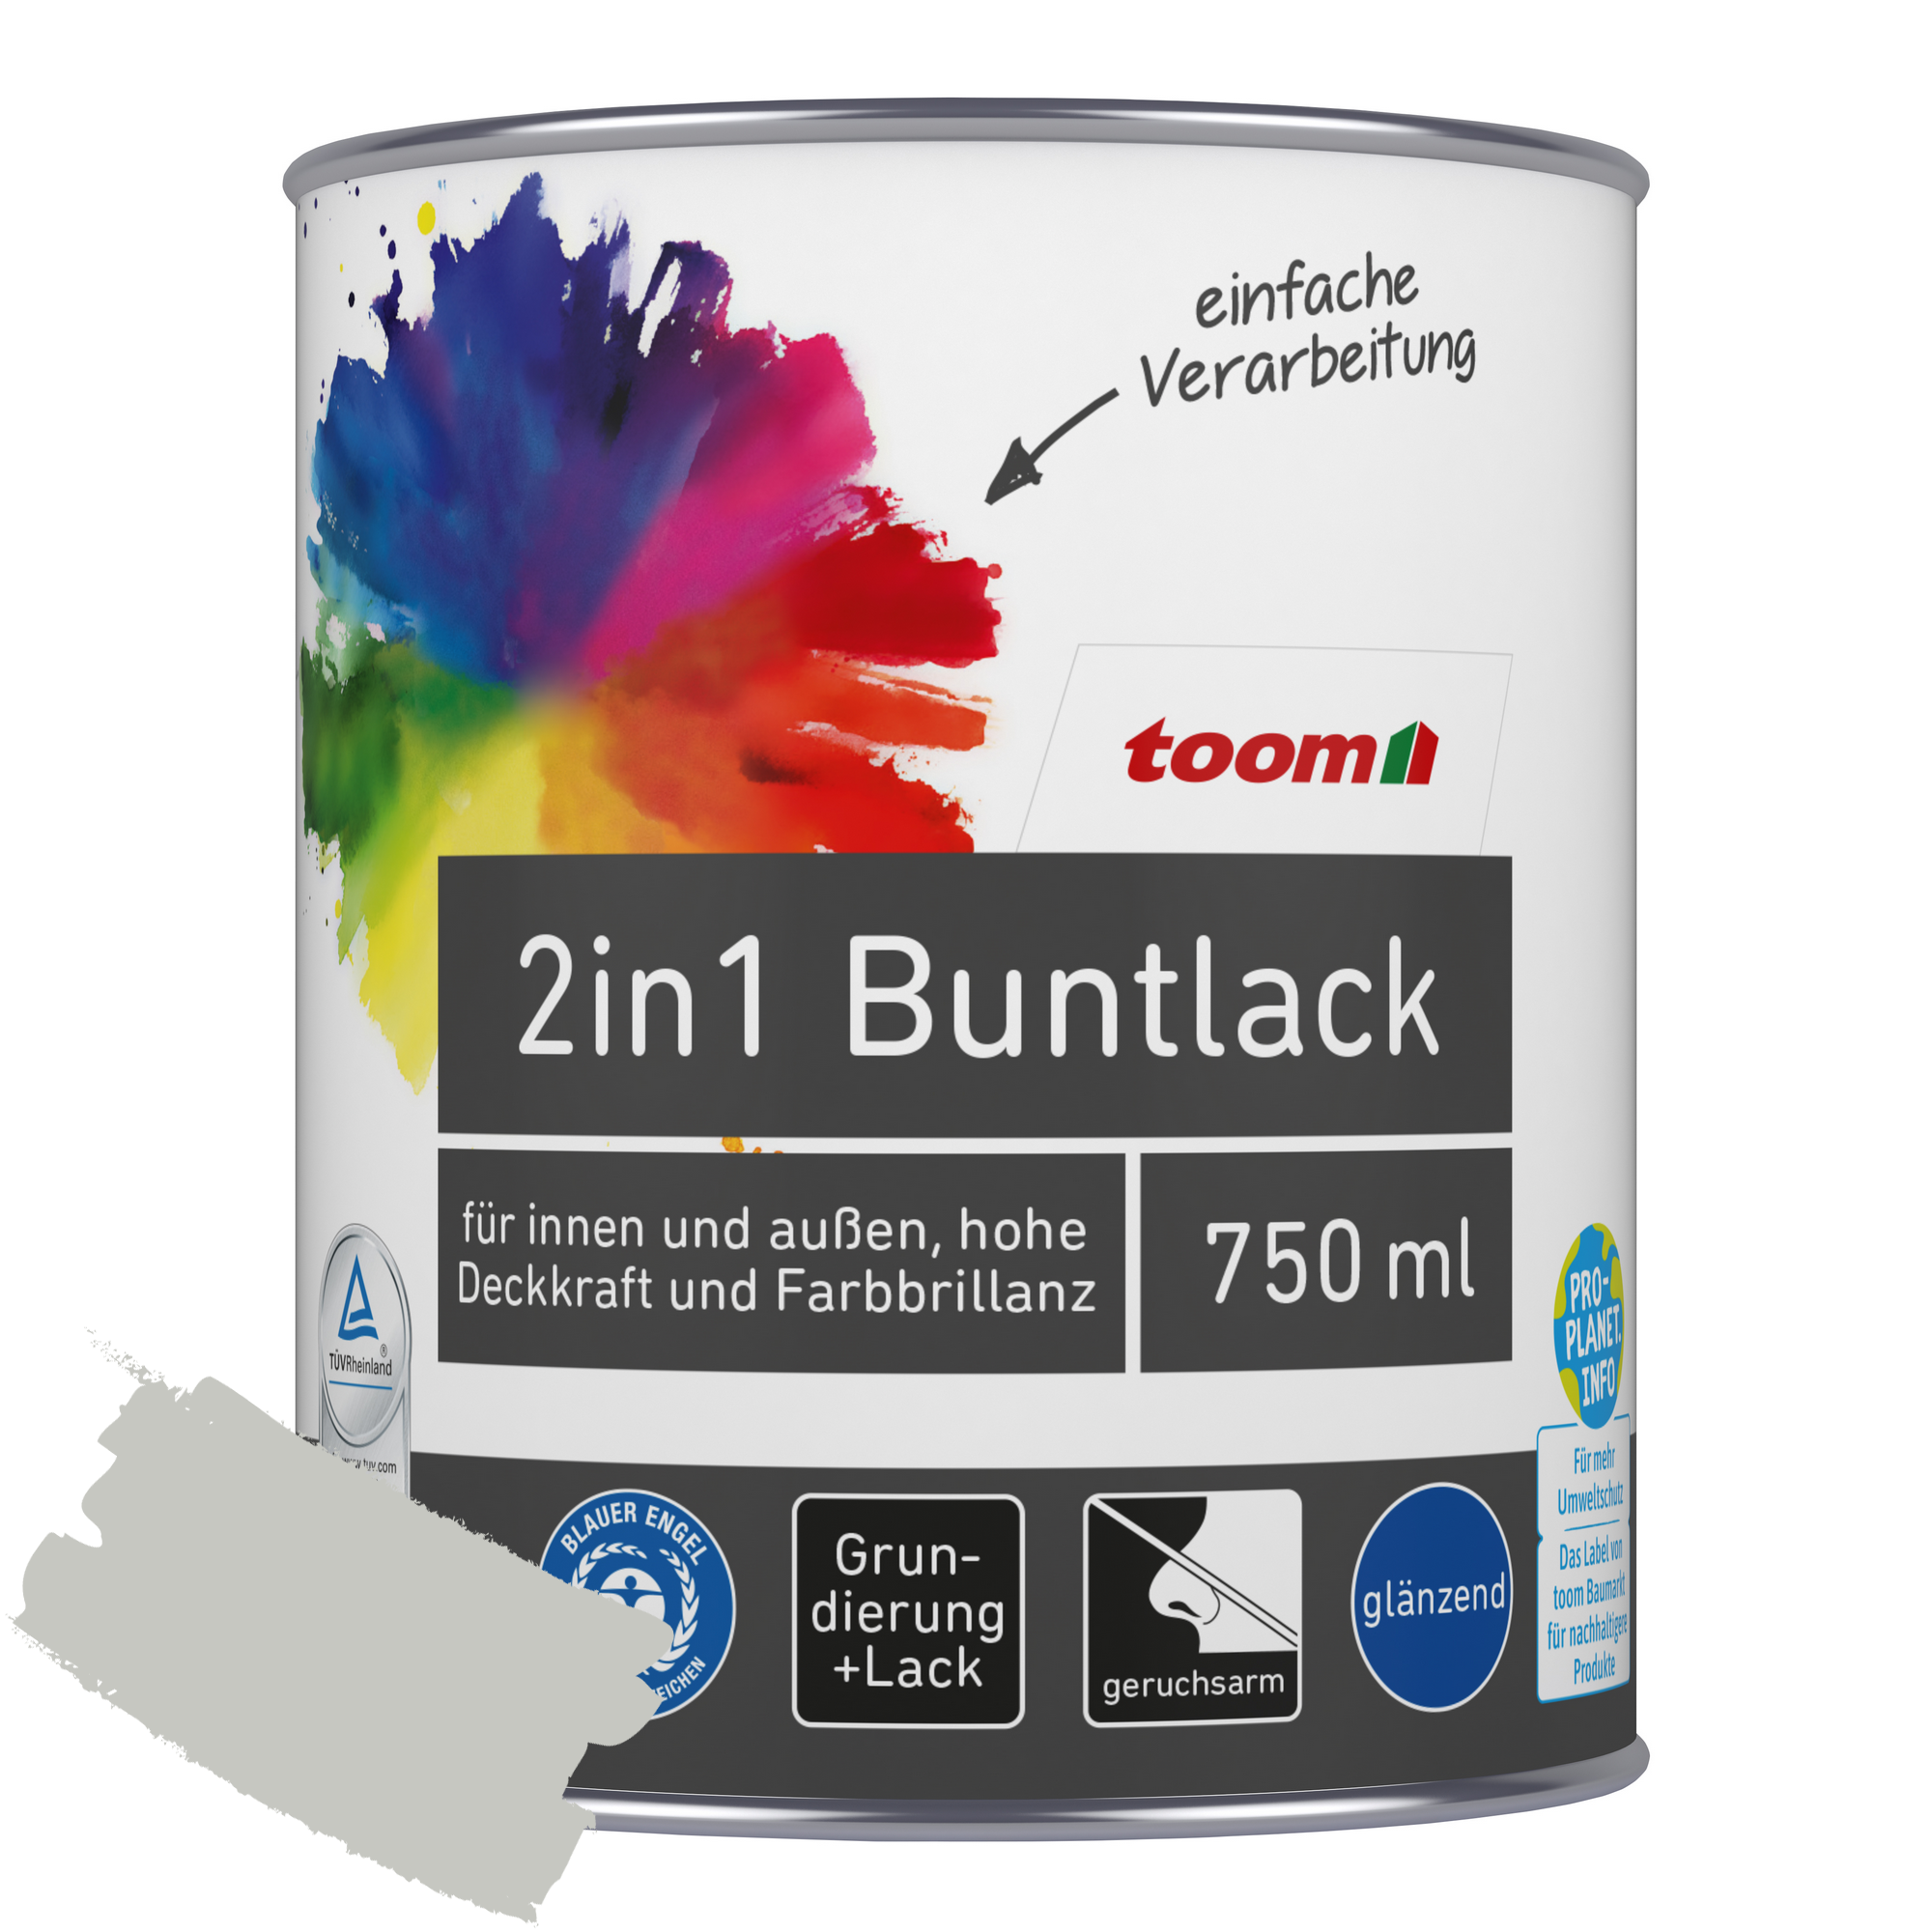 2in1 Buntlack 'Mondschein' lichtgrau glänzend 750 ml + product picture